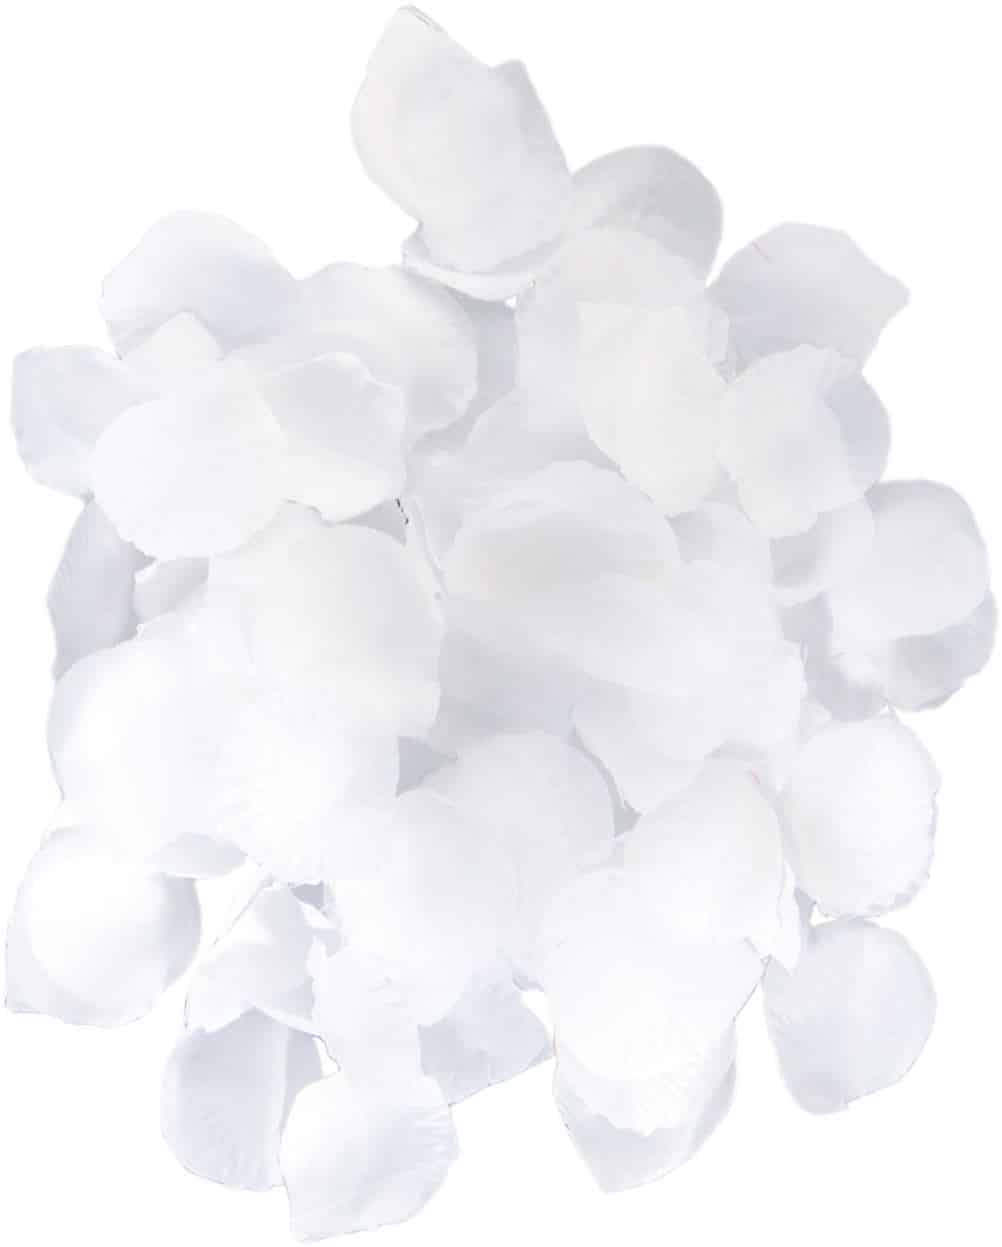 White Rose Petals | Biodegradable Confetti